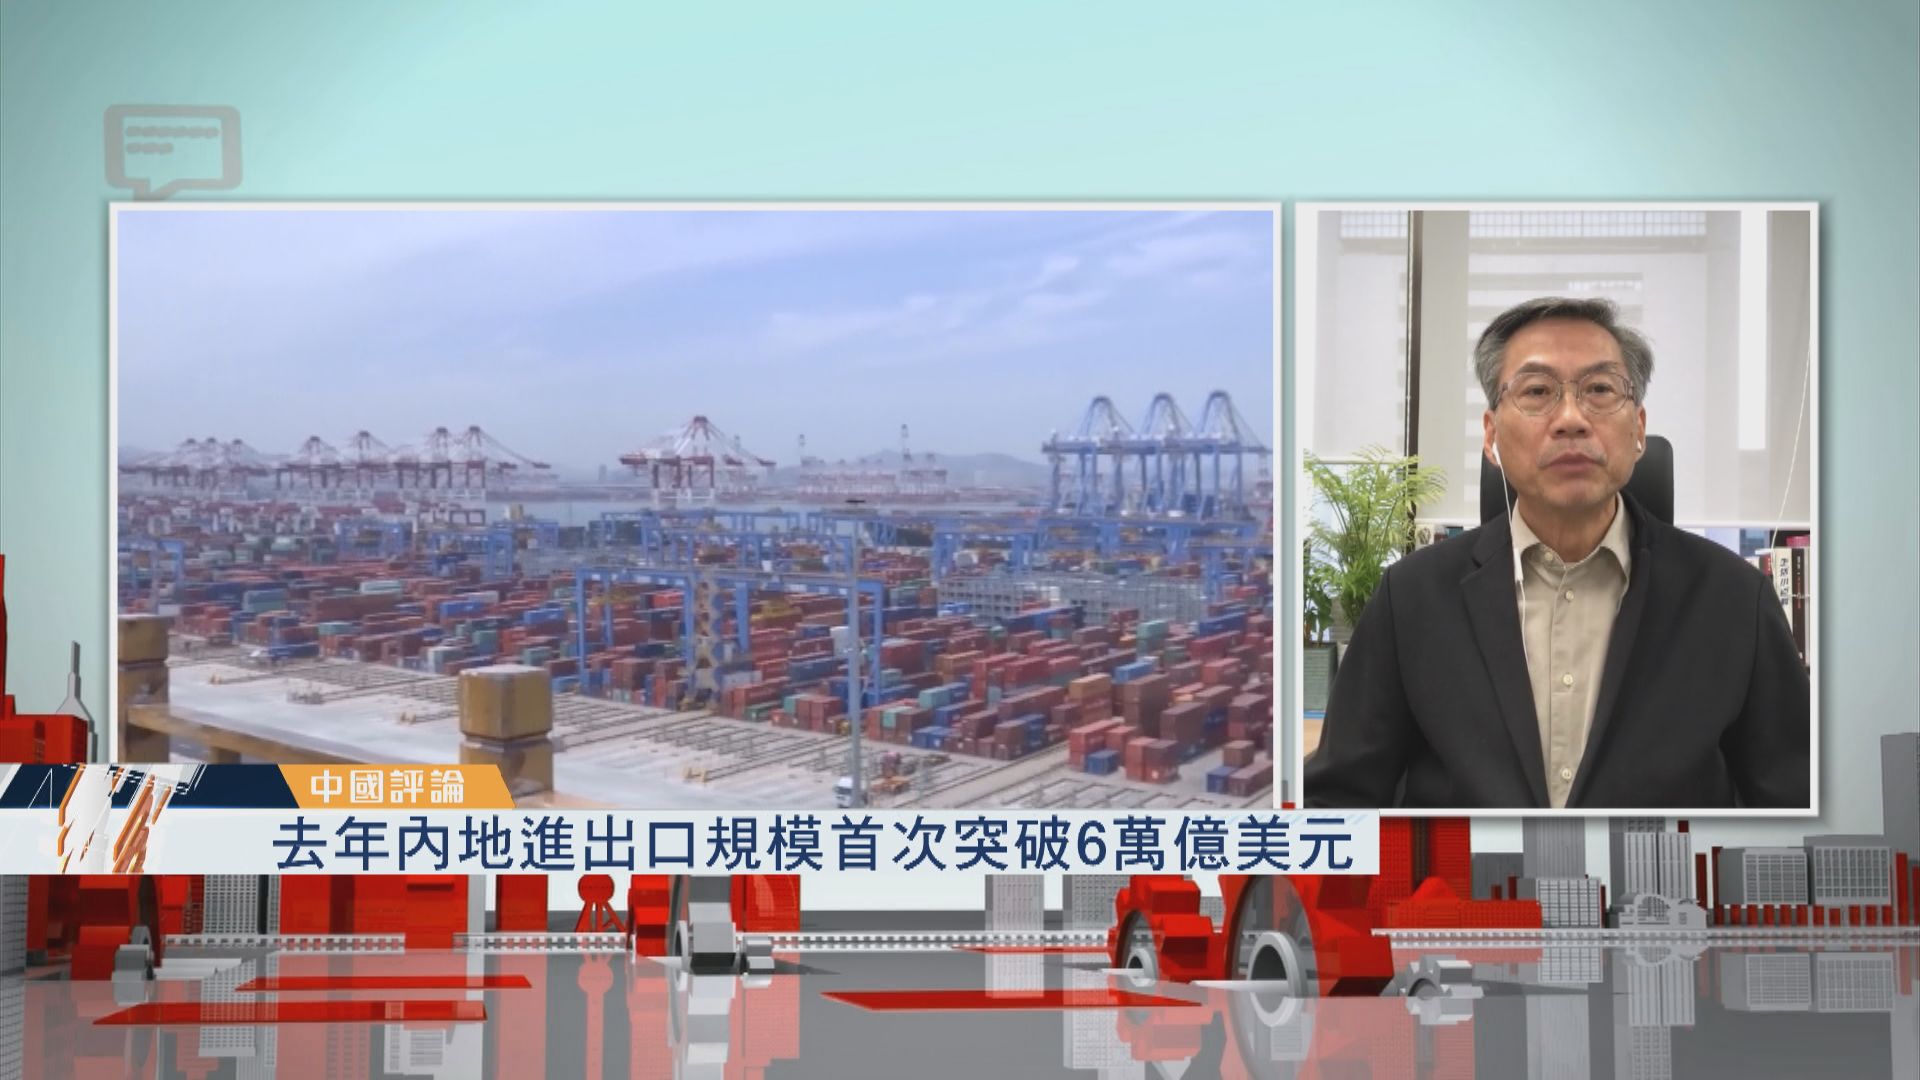 【中國評論】去年內地進出口規模首次突破6萬億美元